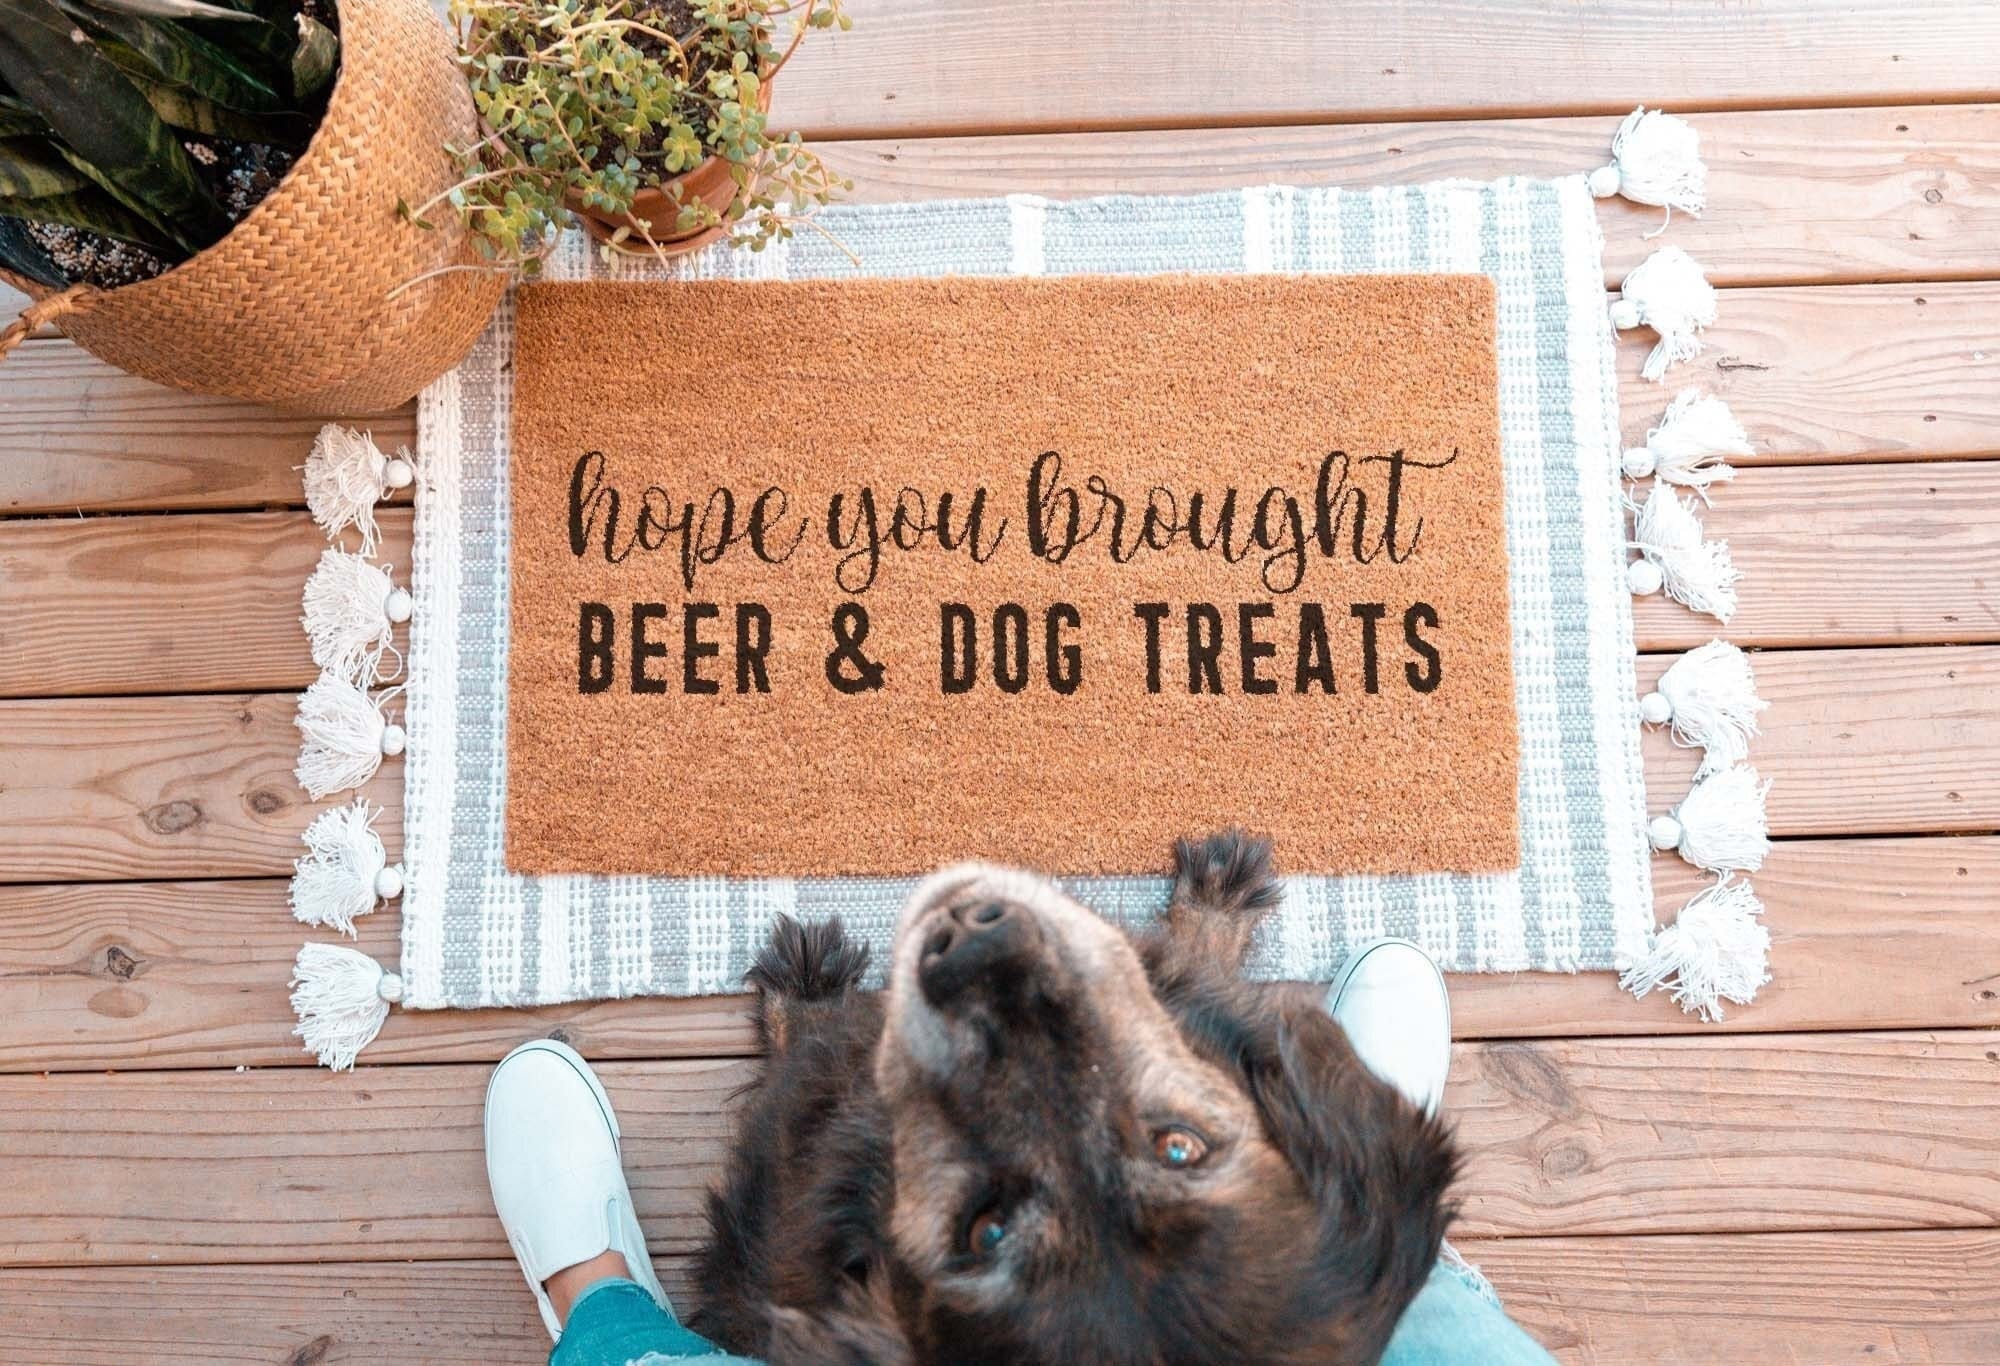 Hope You Brought Coors Light Doormat, Beer Doormat, Gag Gift, Housewarming  Gift 